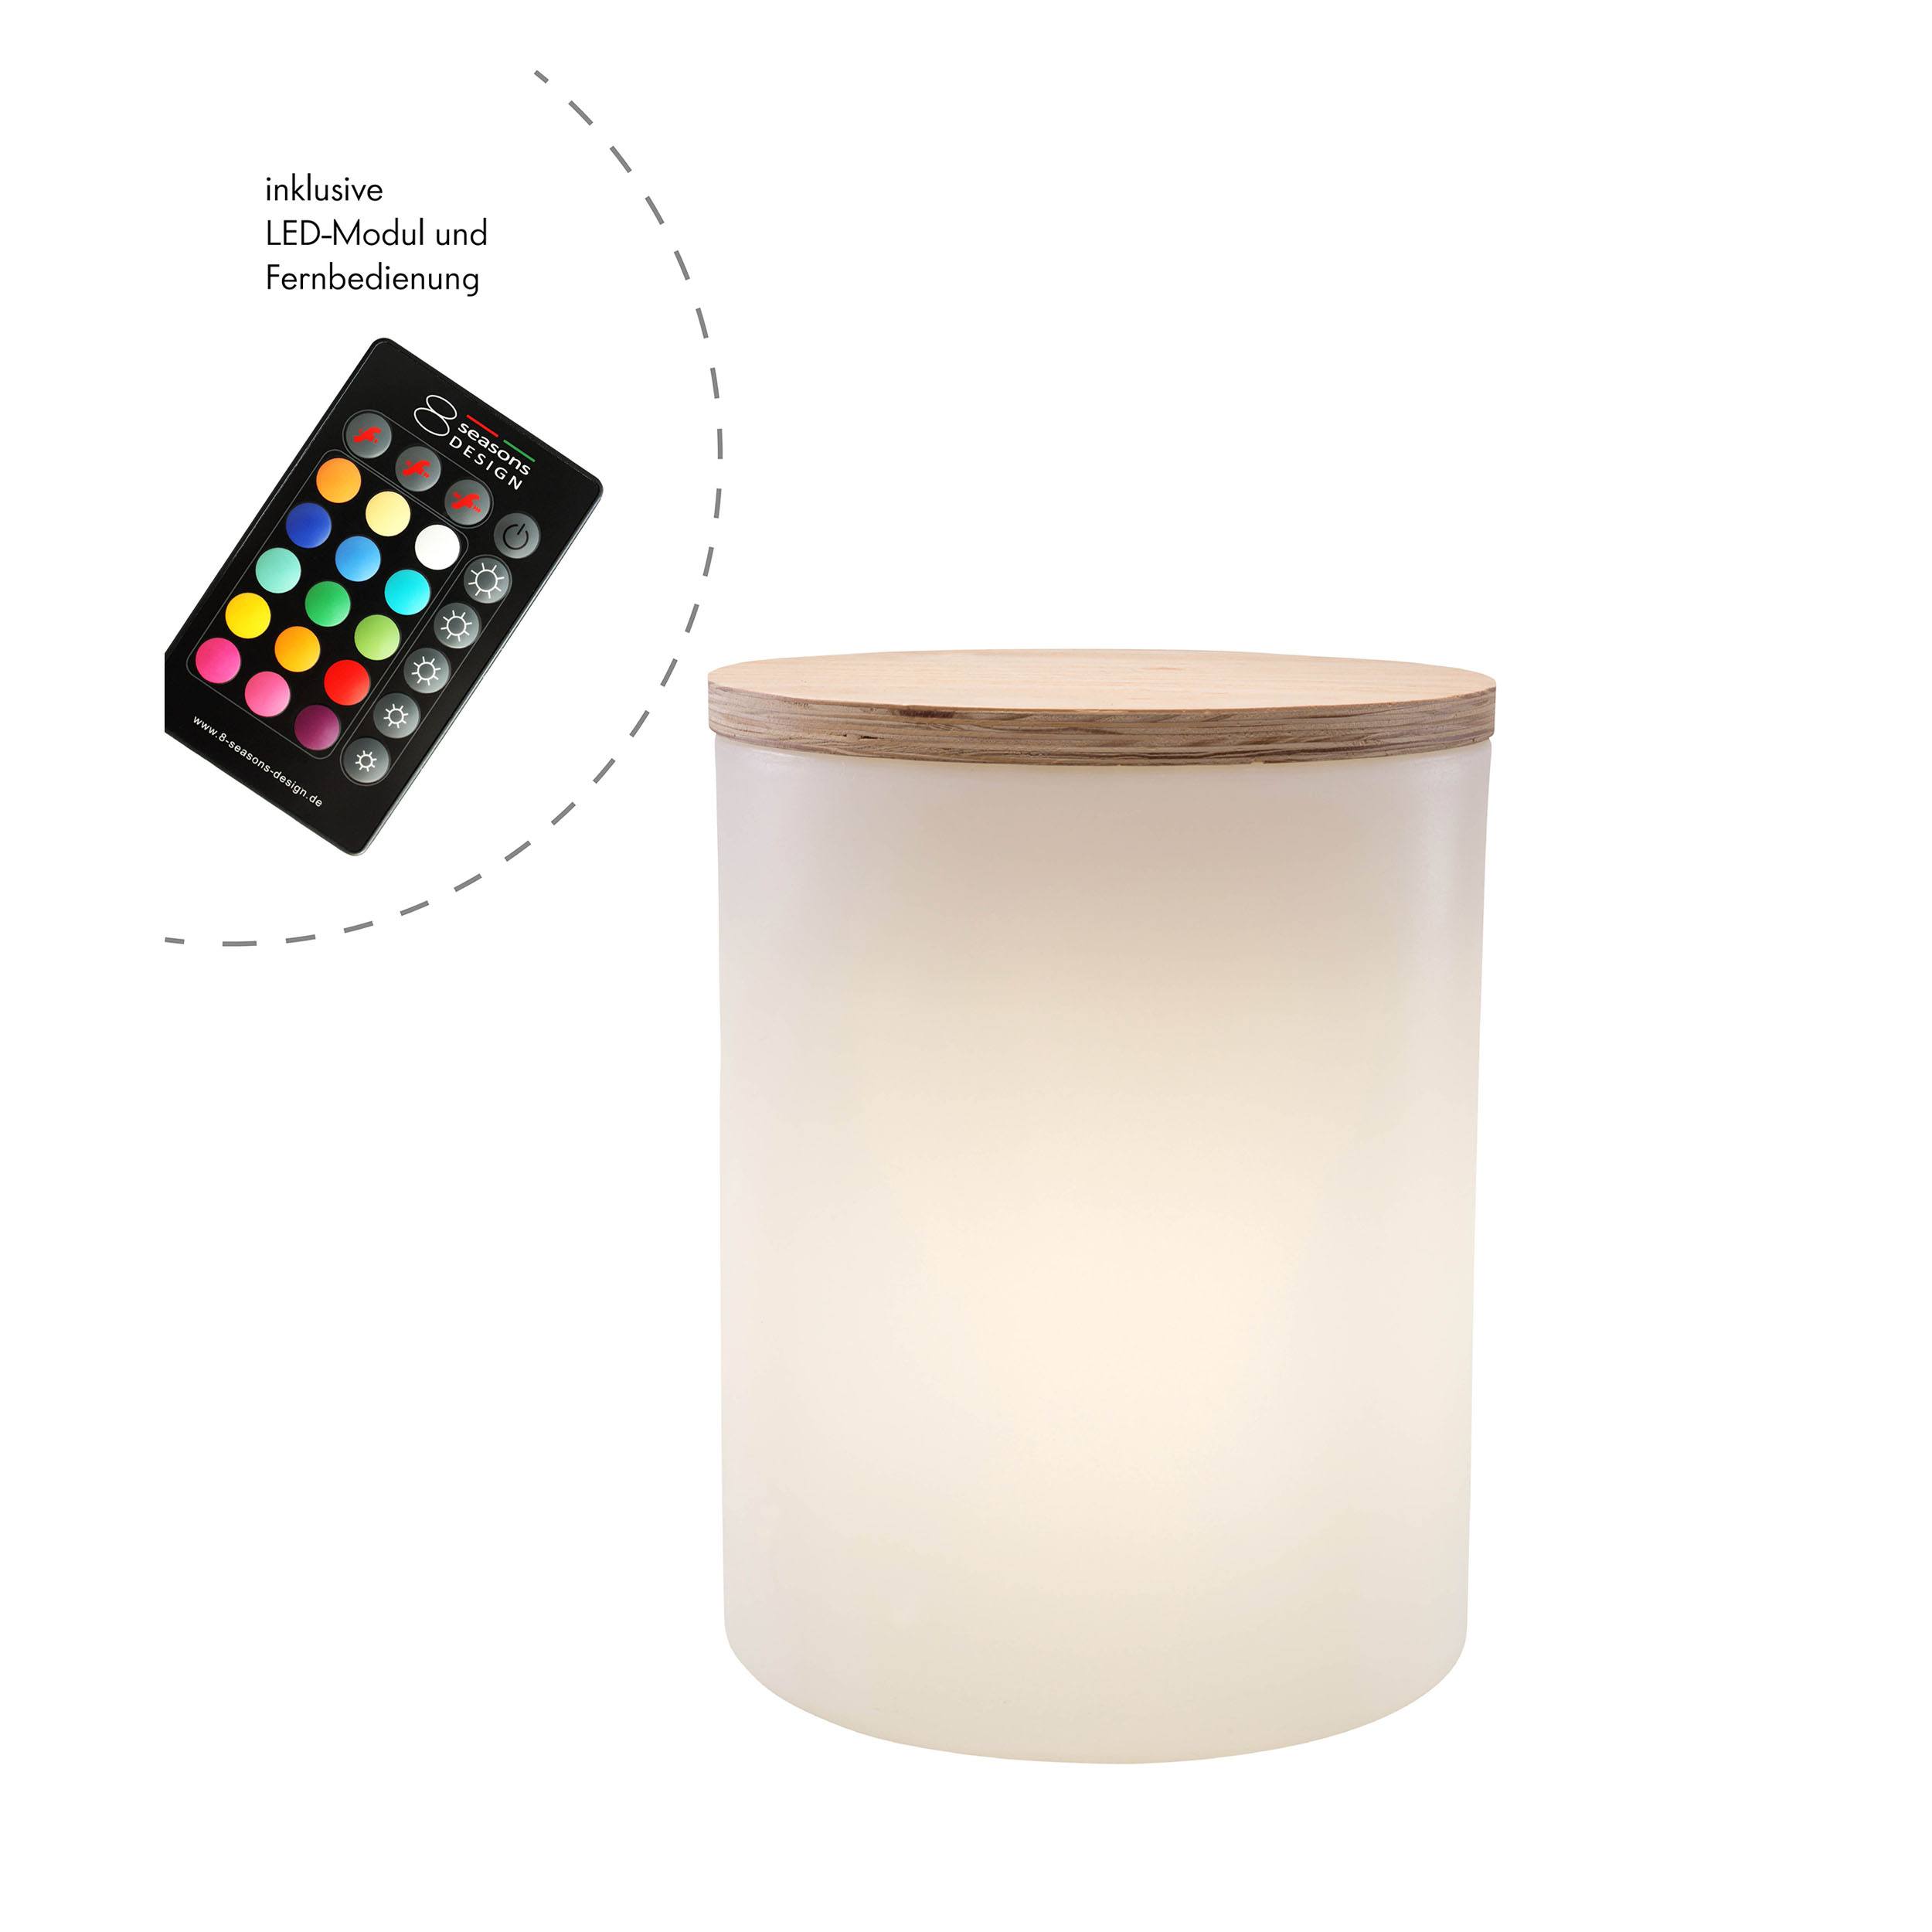 Shining Drum Outdoor LED lampe sur pied et table d'appoint avec changement de couleur